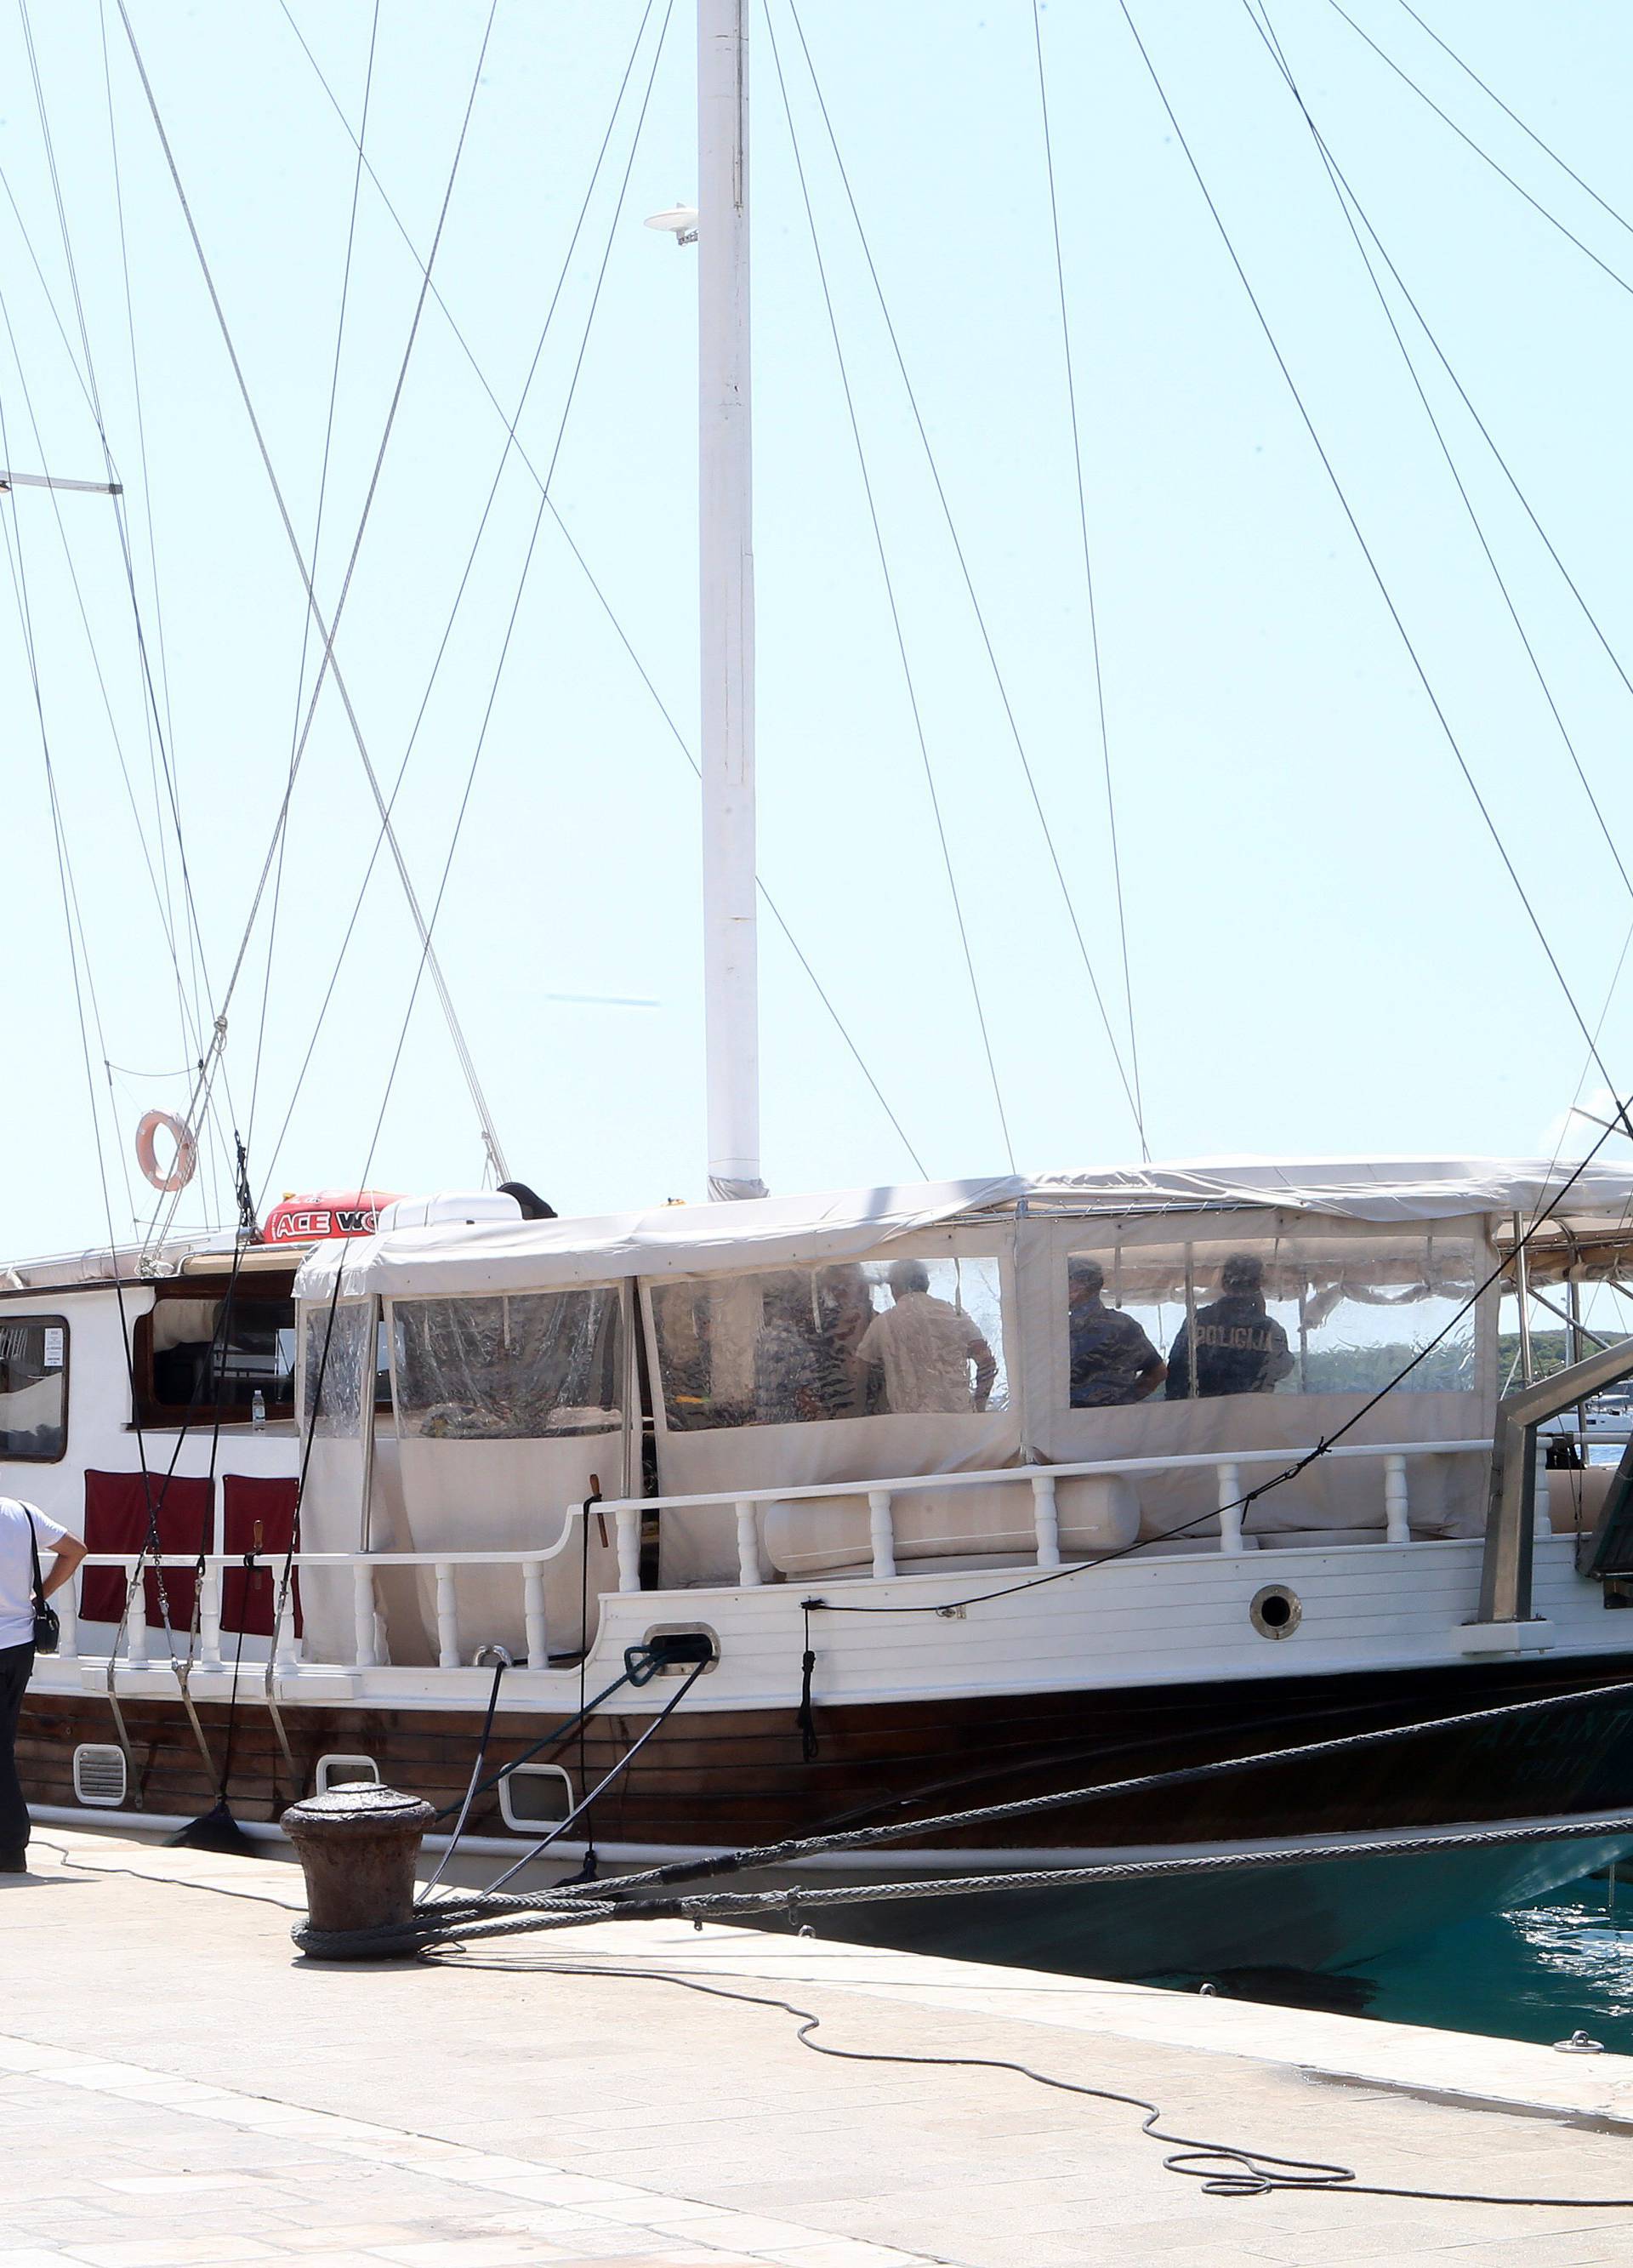 Turisti se i ranije žalili na brod: Ne radi WC i u kabinama smrdi